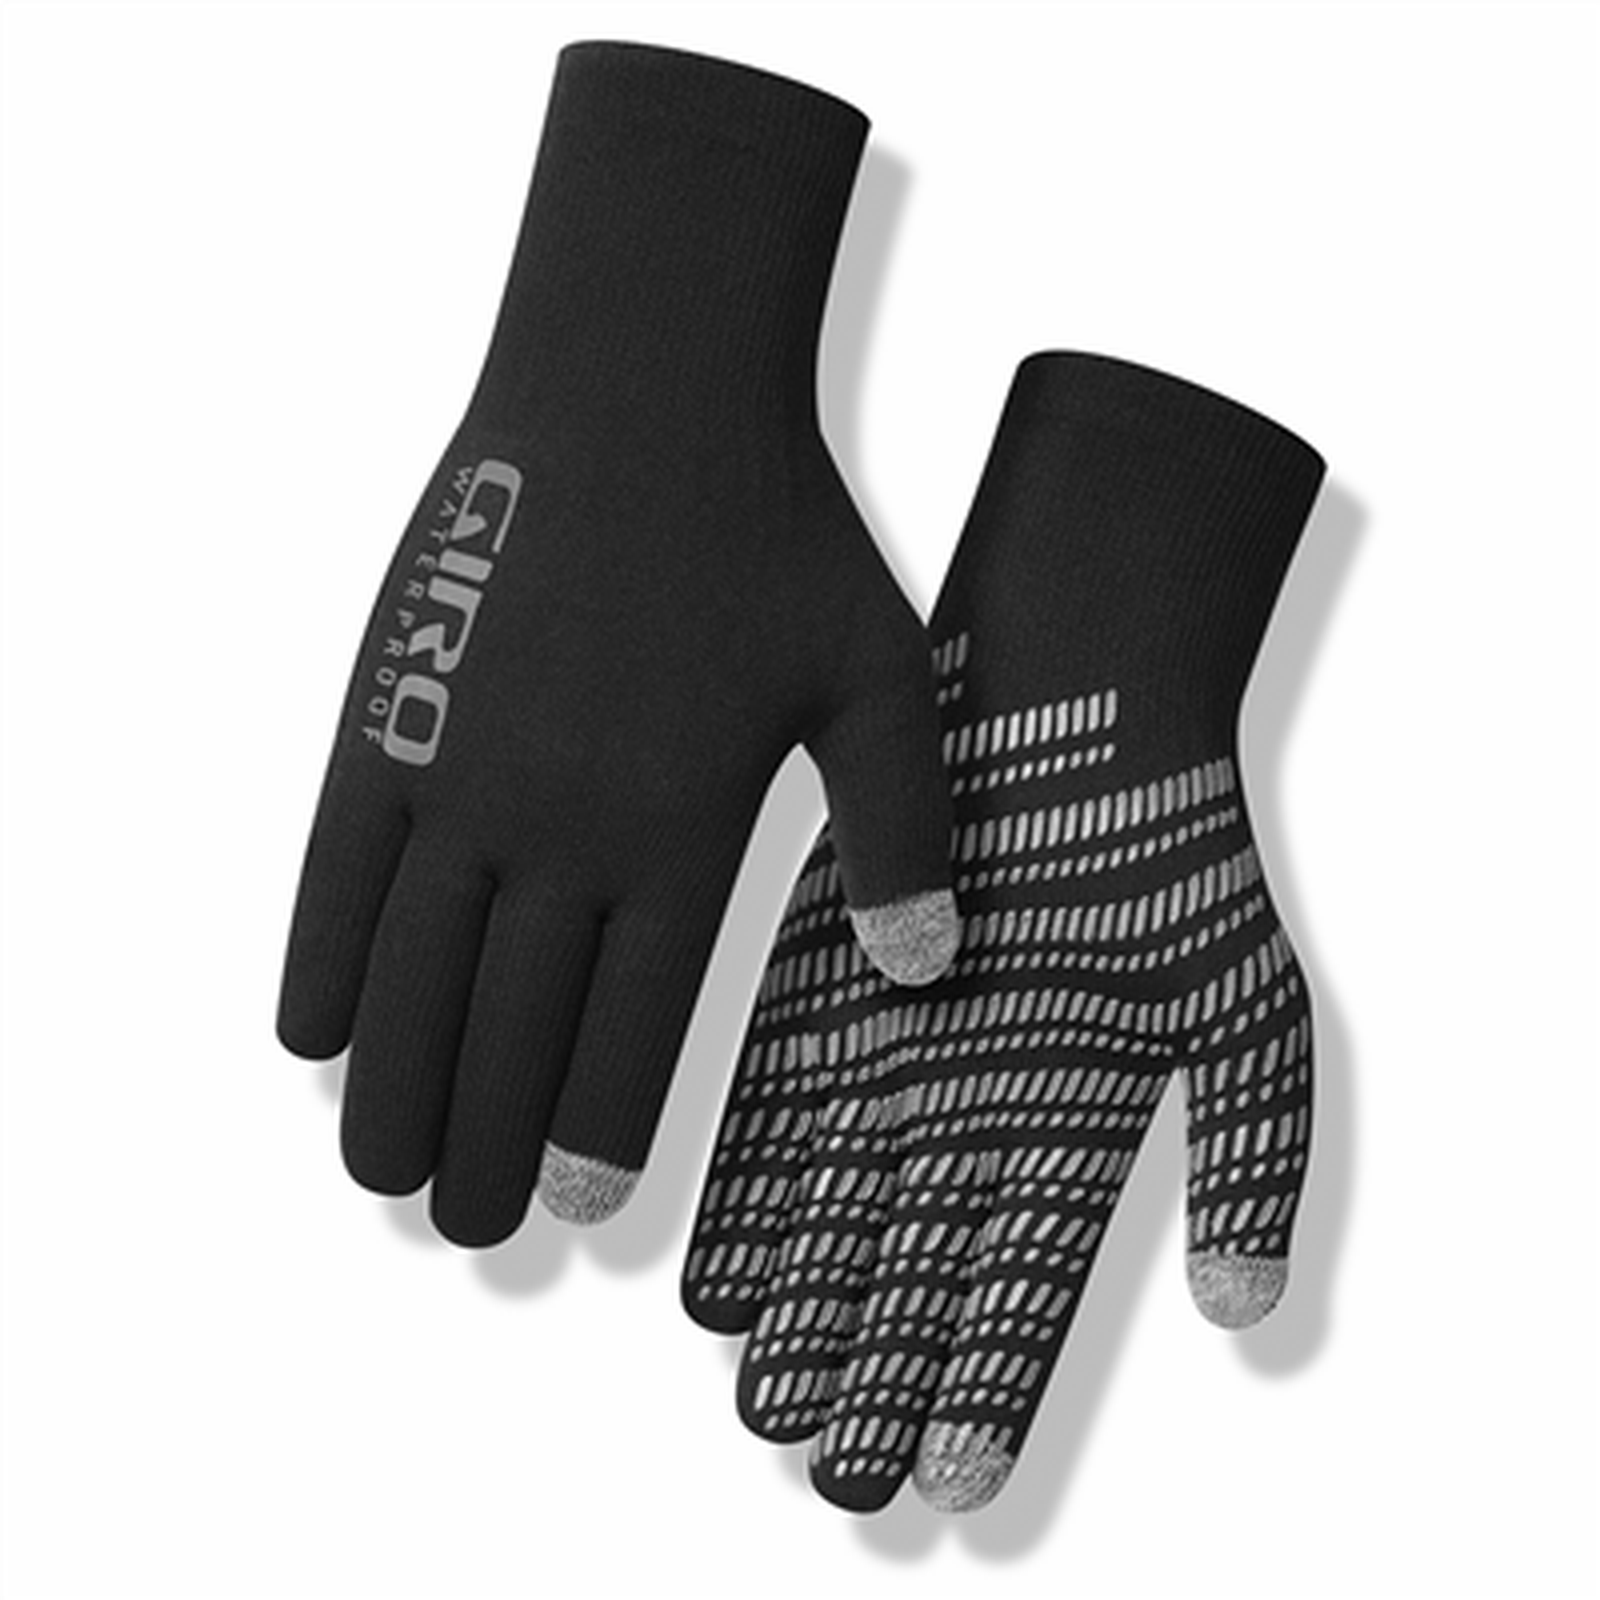 Xnetic H20 Glove